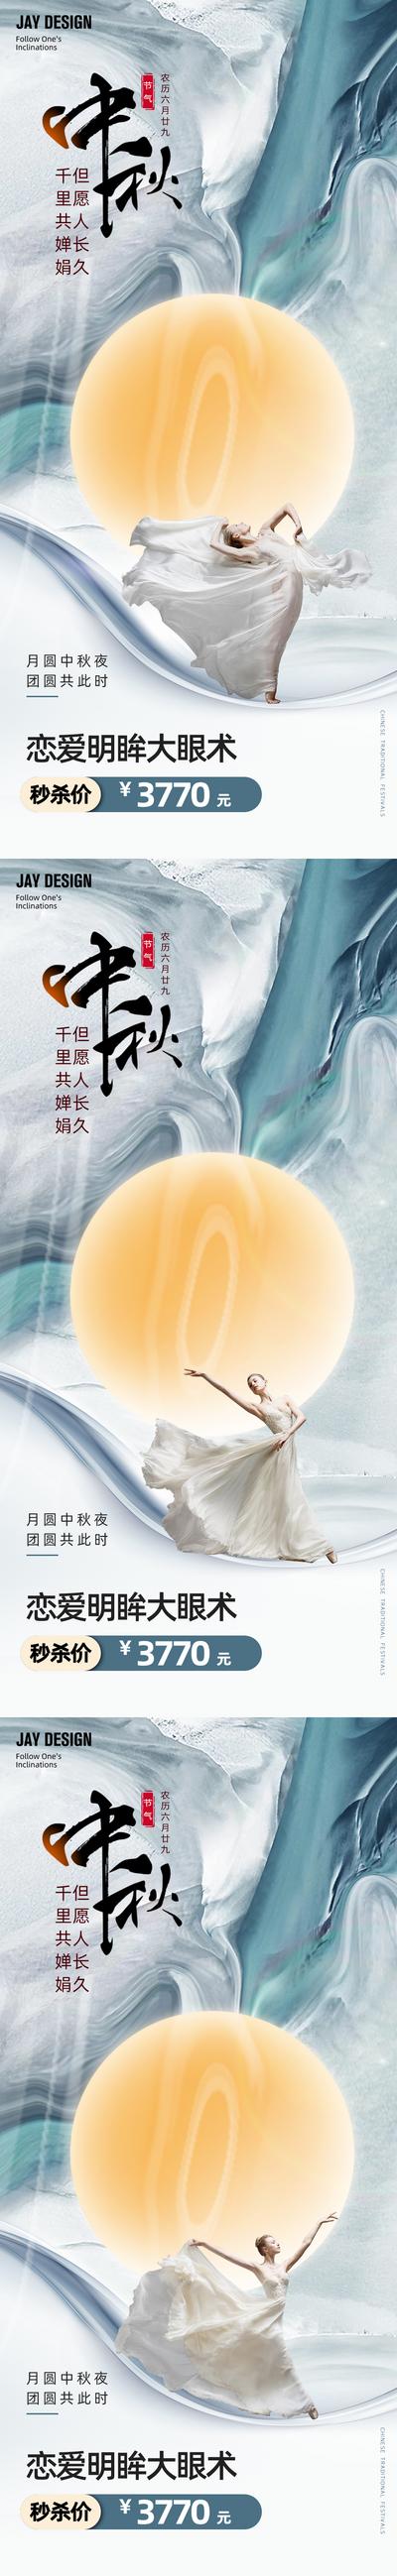 南门网 广告 海报 电商 中秋 医美 活动 节日 促销 中式 中国风